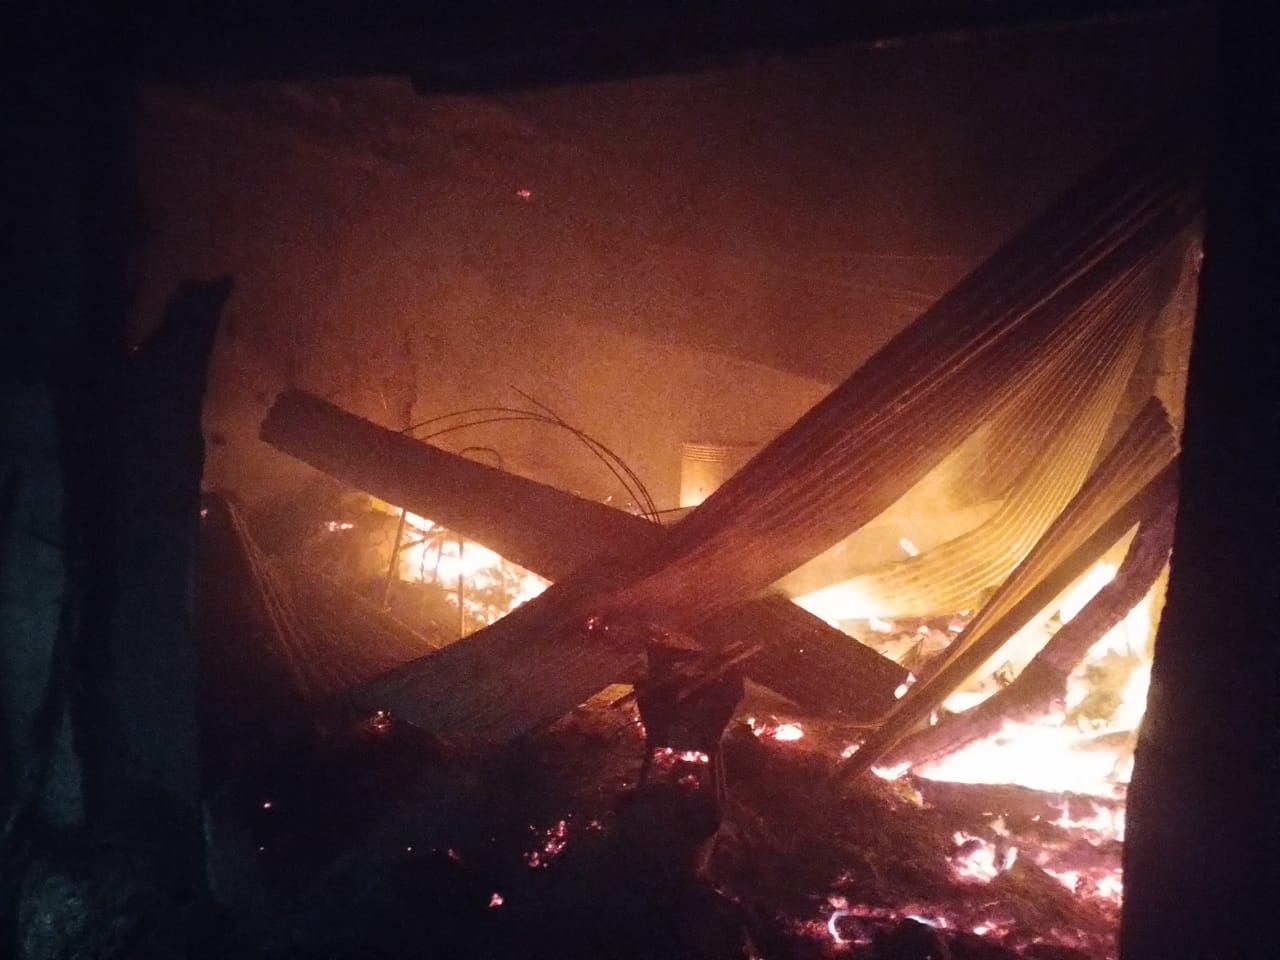 La caída de un rayo desató un incendio en un hogar del departamento Minas